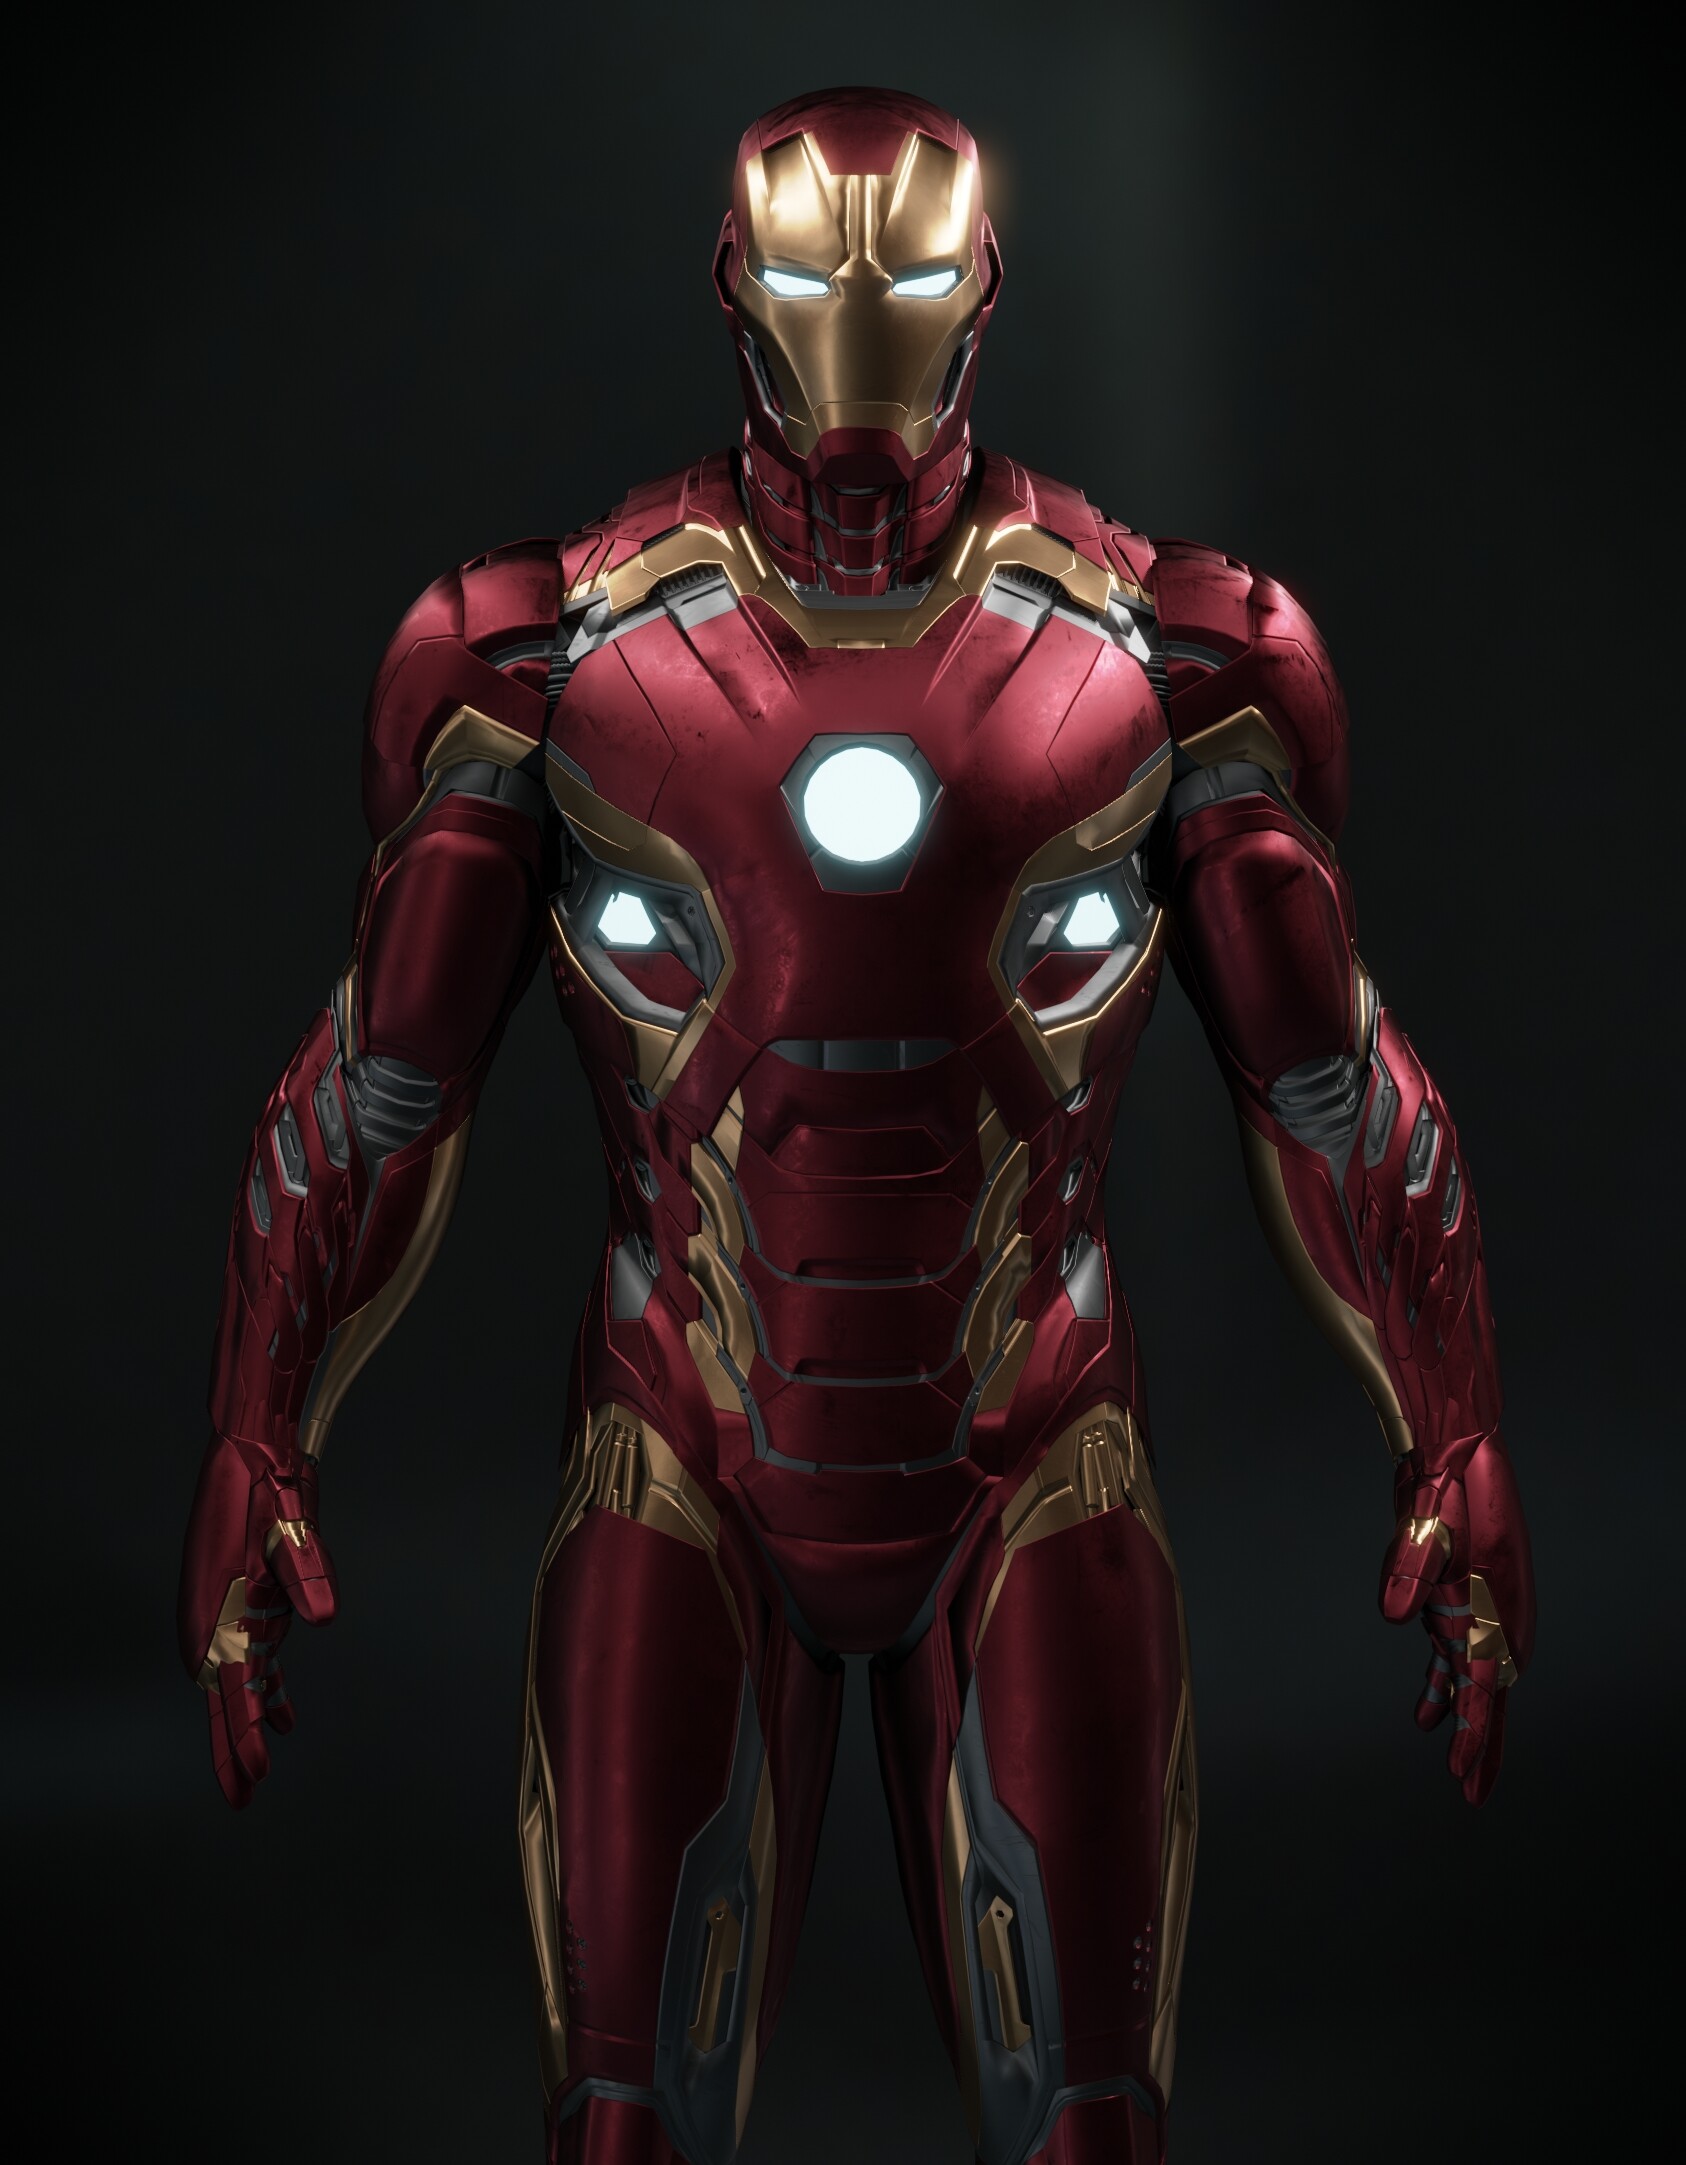 ArtStation - Iron Man Mark 45 rendered 